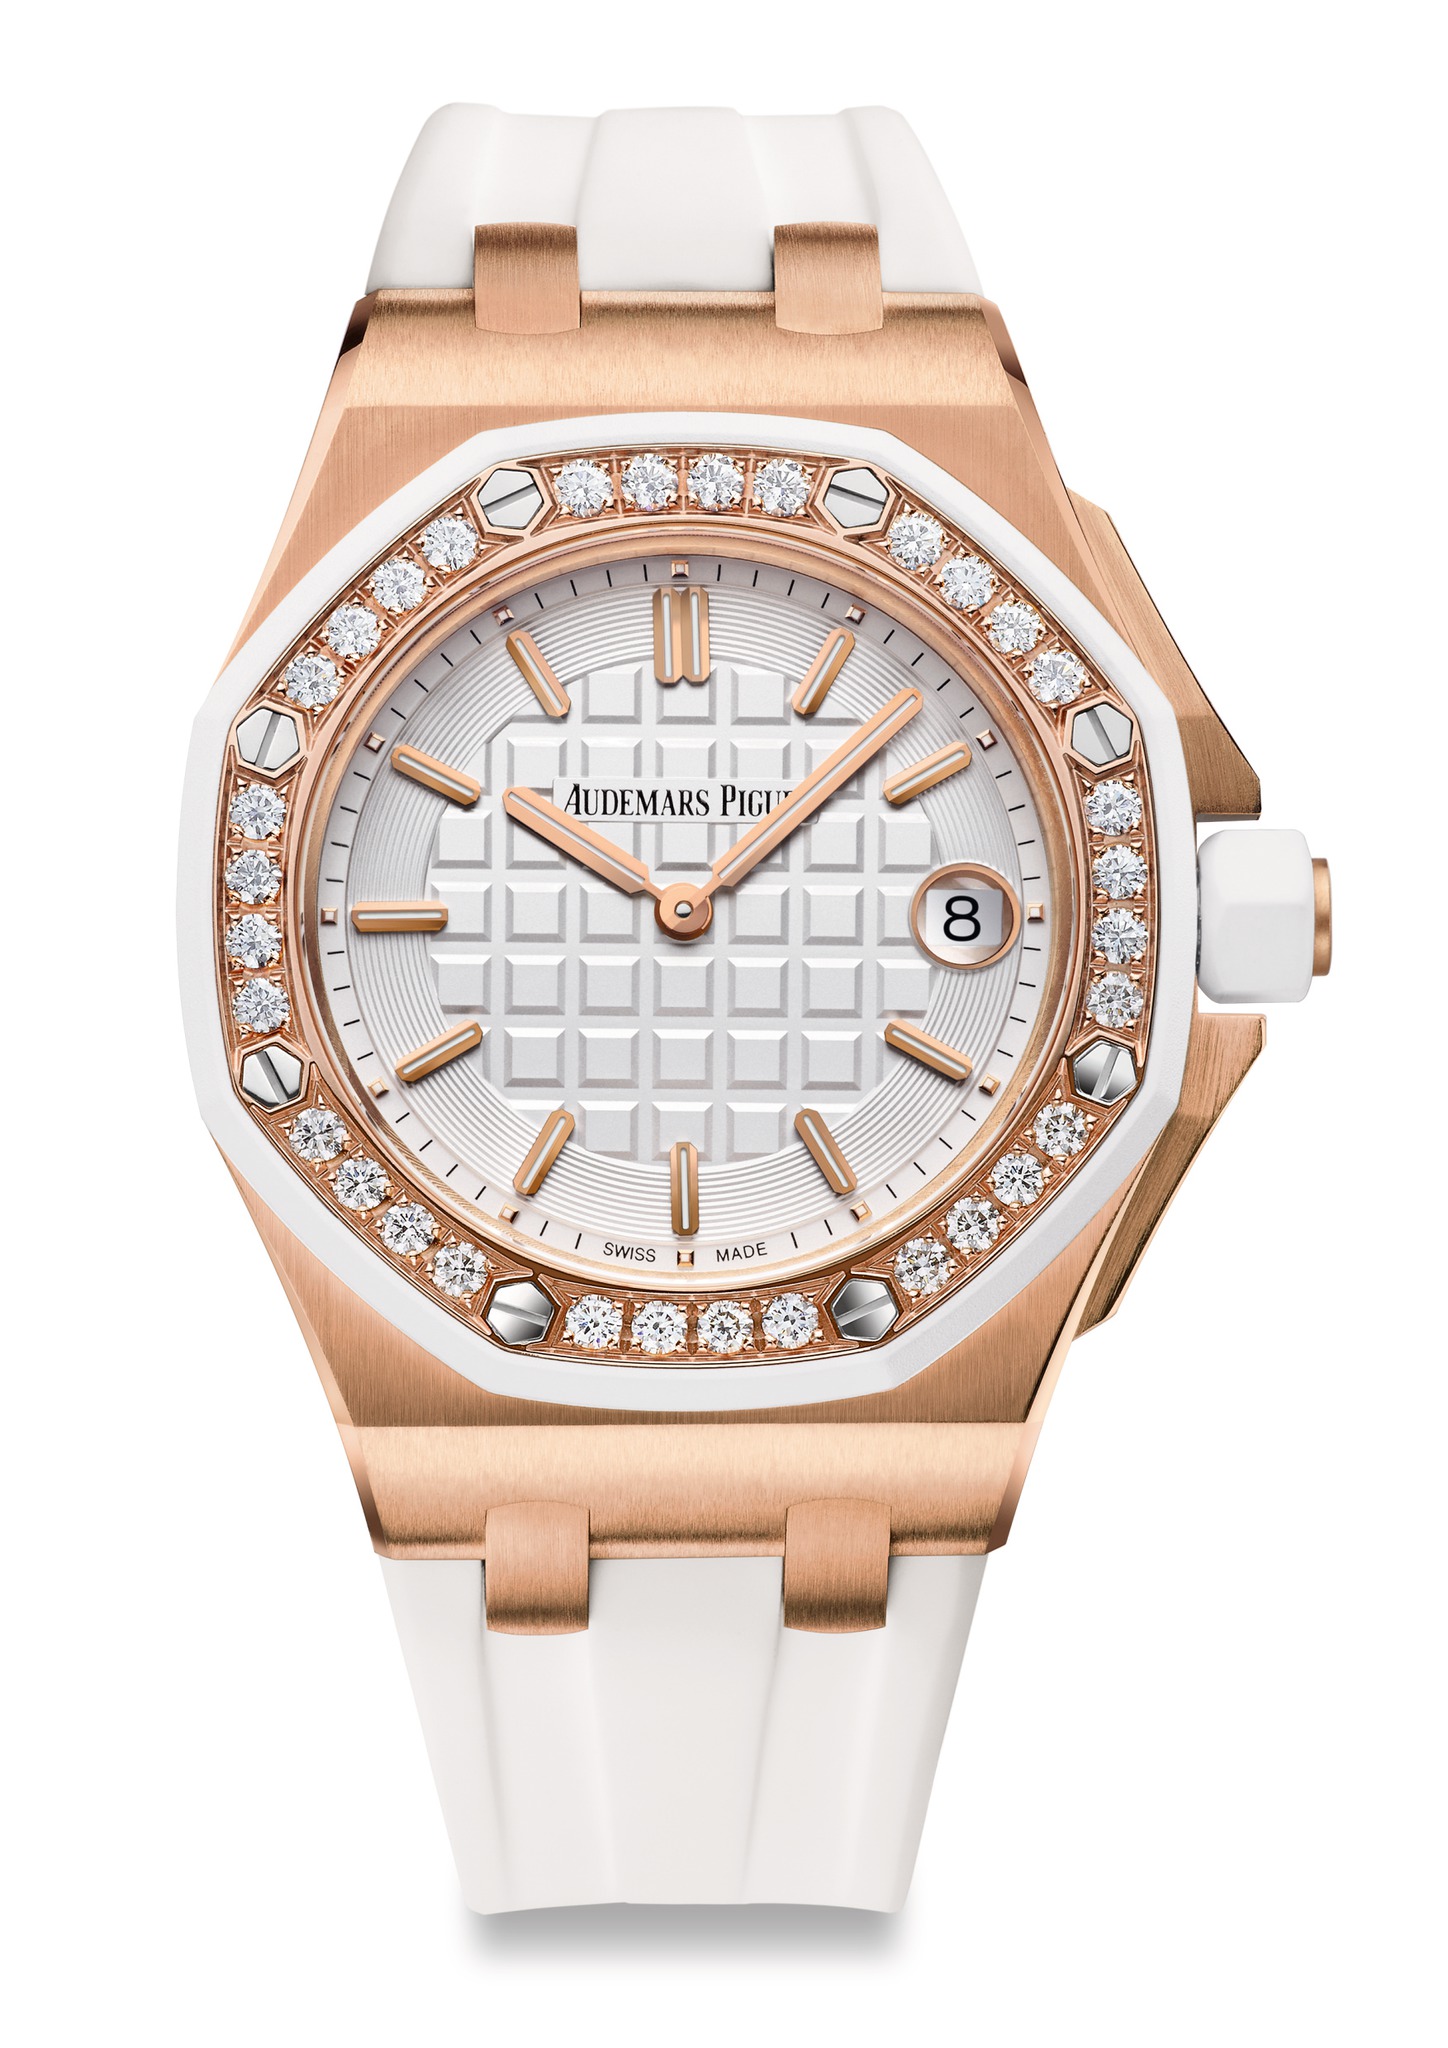 Audemars Piguet New Royal Oak Offshore Lady Diamonds Pink Gold watch REF: 67540OK.ZZ.D010CA.01